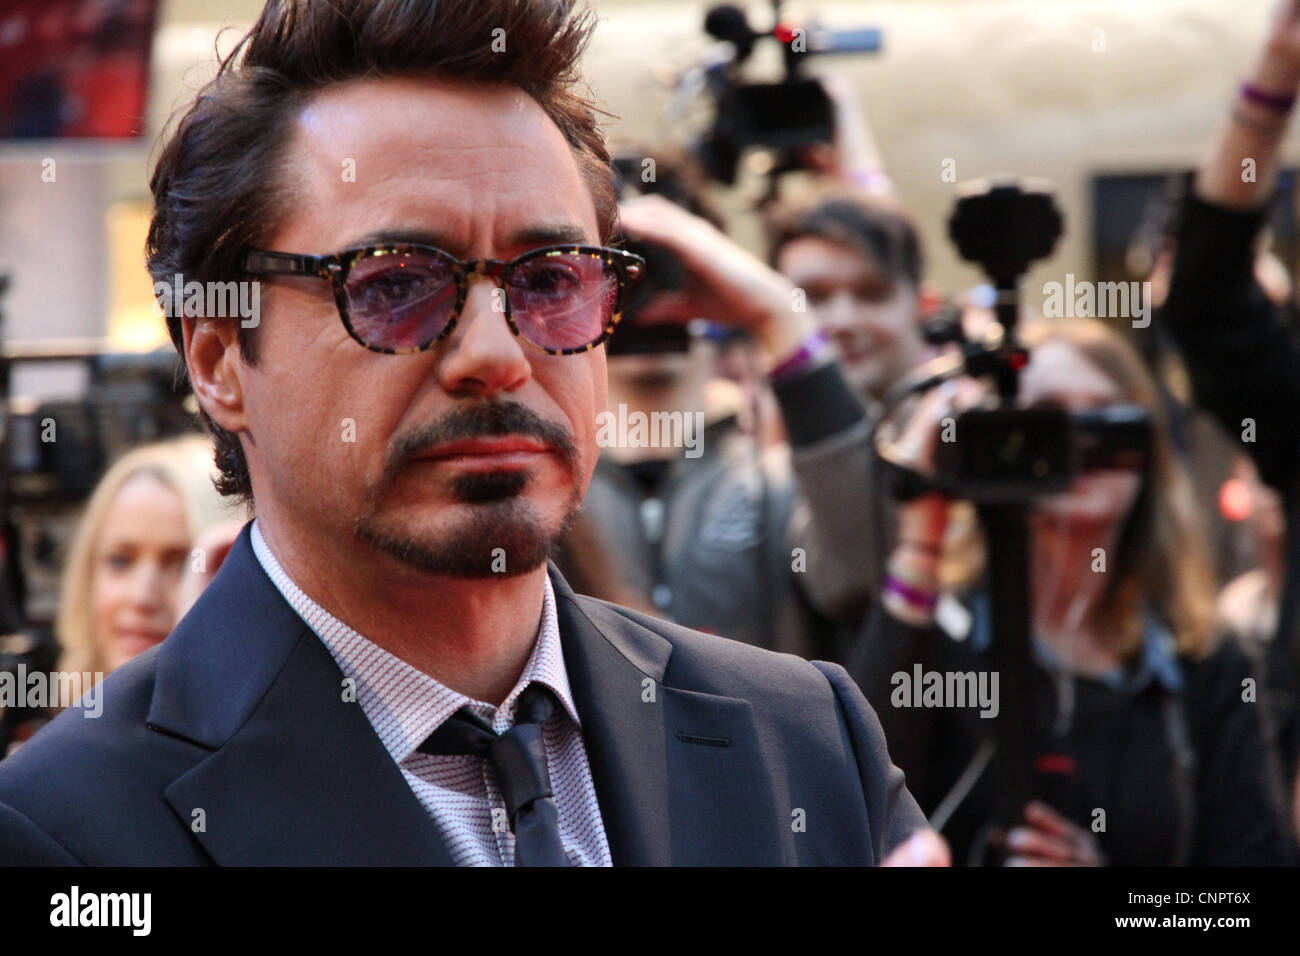 Schauspieler Robert Downey Jr. (Iron Man) Autogramme und begrüßt das Publikum an der Europa-Premiere von The Avengers in London Stockfoto